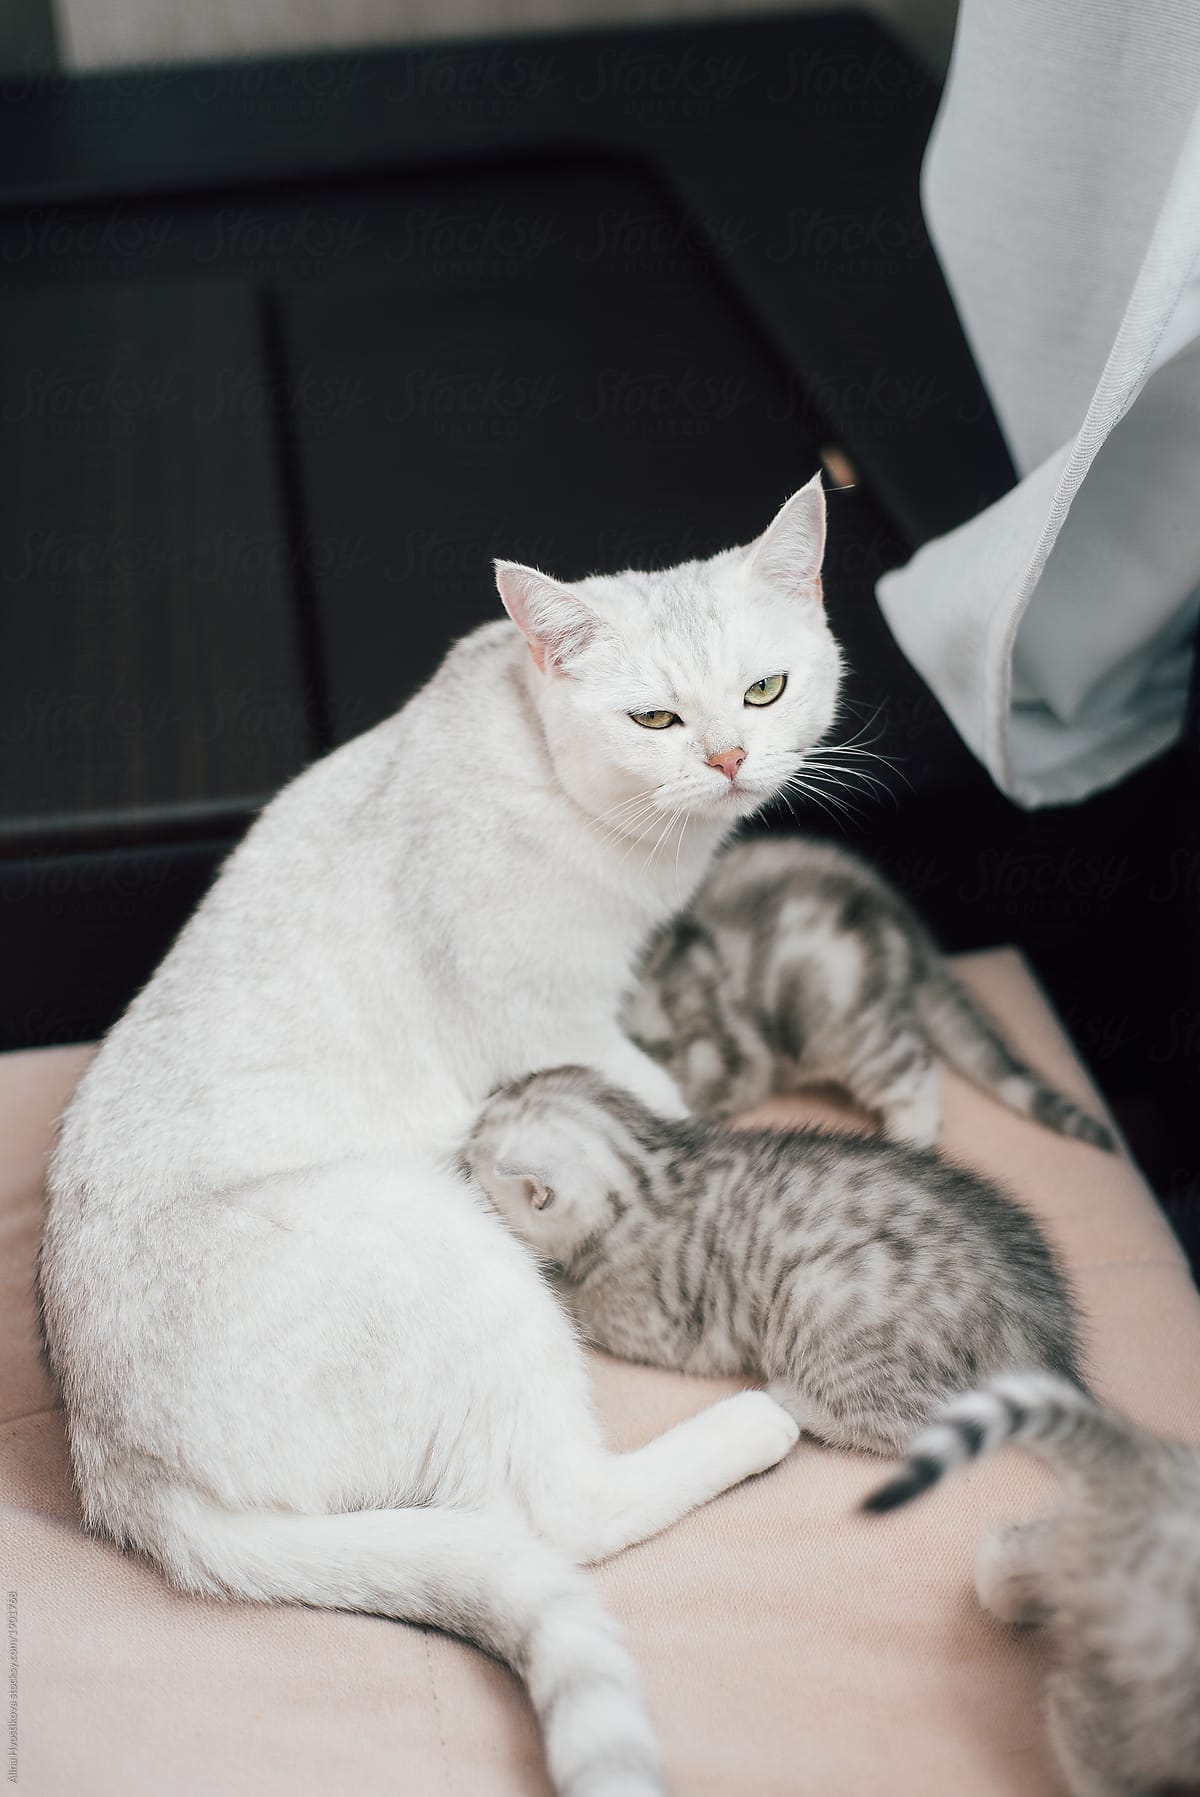 Tired cat feeding kittens